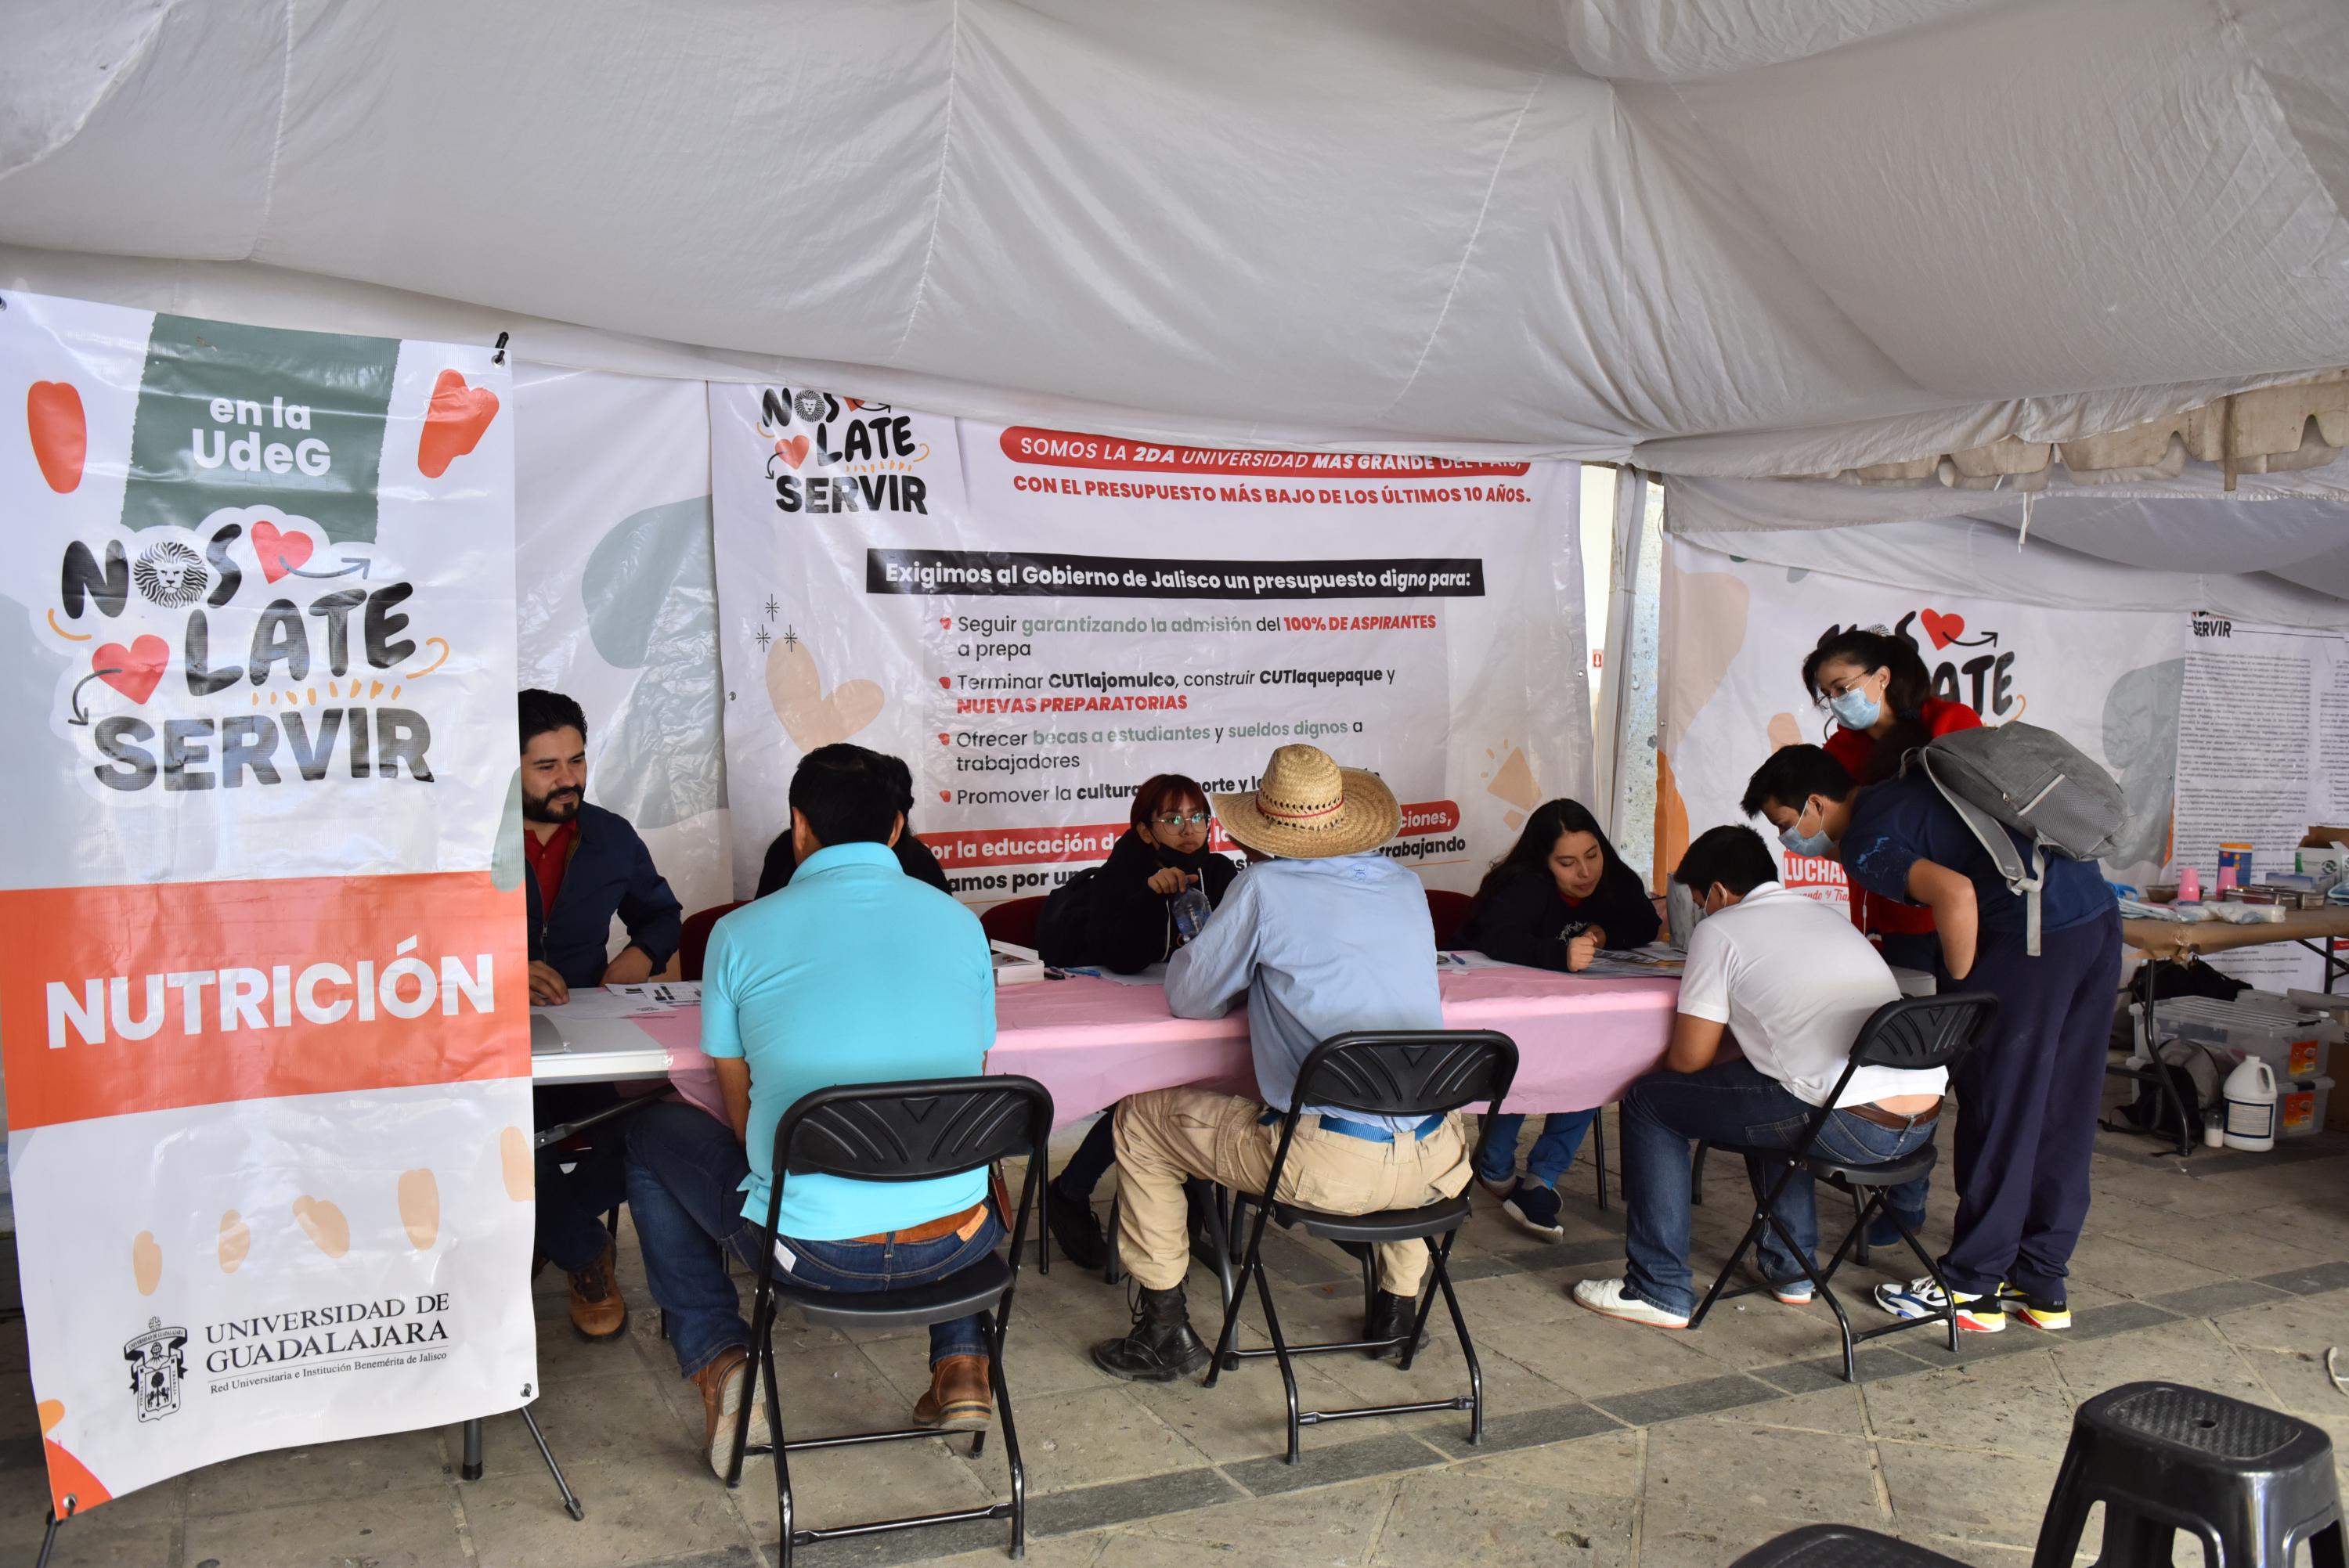 Las Brigadas Universitarias "Nos late servir" facilitan atención y servicios médicos en las cercanías del Centro de Guadalajara